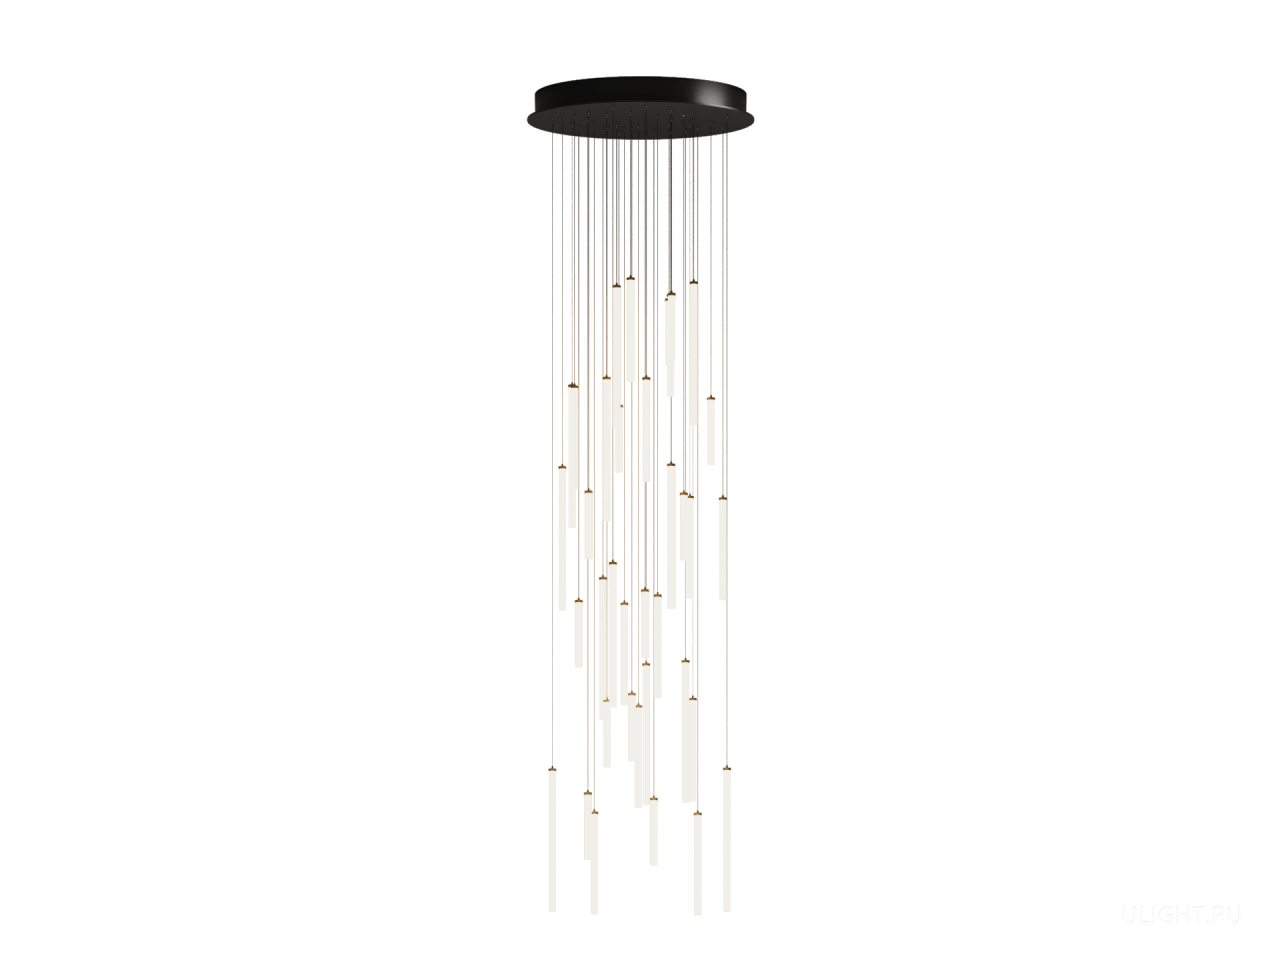 Каскадная композиция на круглом основании. Вертикальные подвесные светильники icicle с подсветкой на 360 градусов созданы для прочного и совершенно оригинального светового решения. Одновременно свободный и сдержанный, корпус оформлен в эстетичной линейной форме.